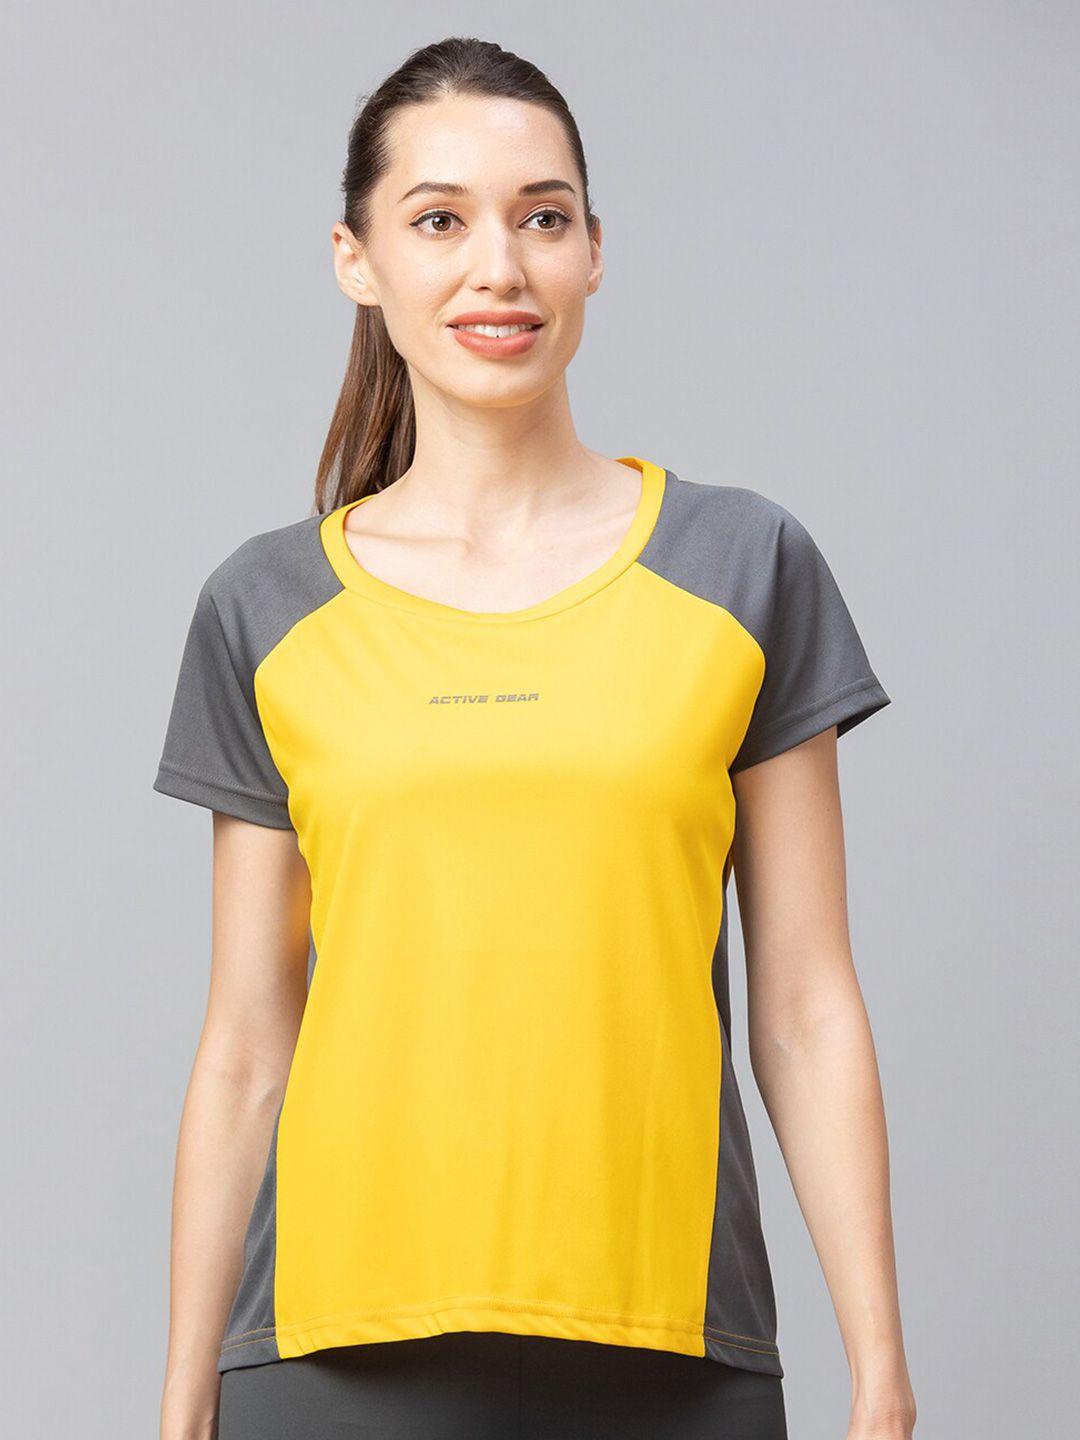 globus-women-yellow-t-shirt